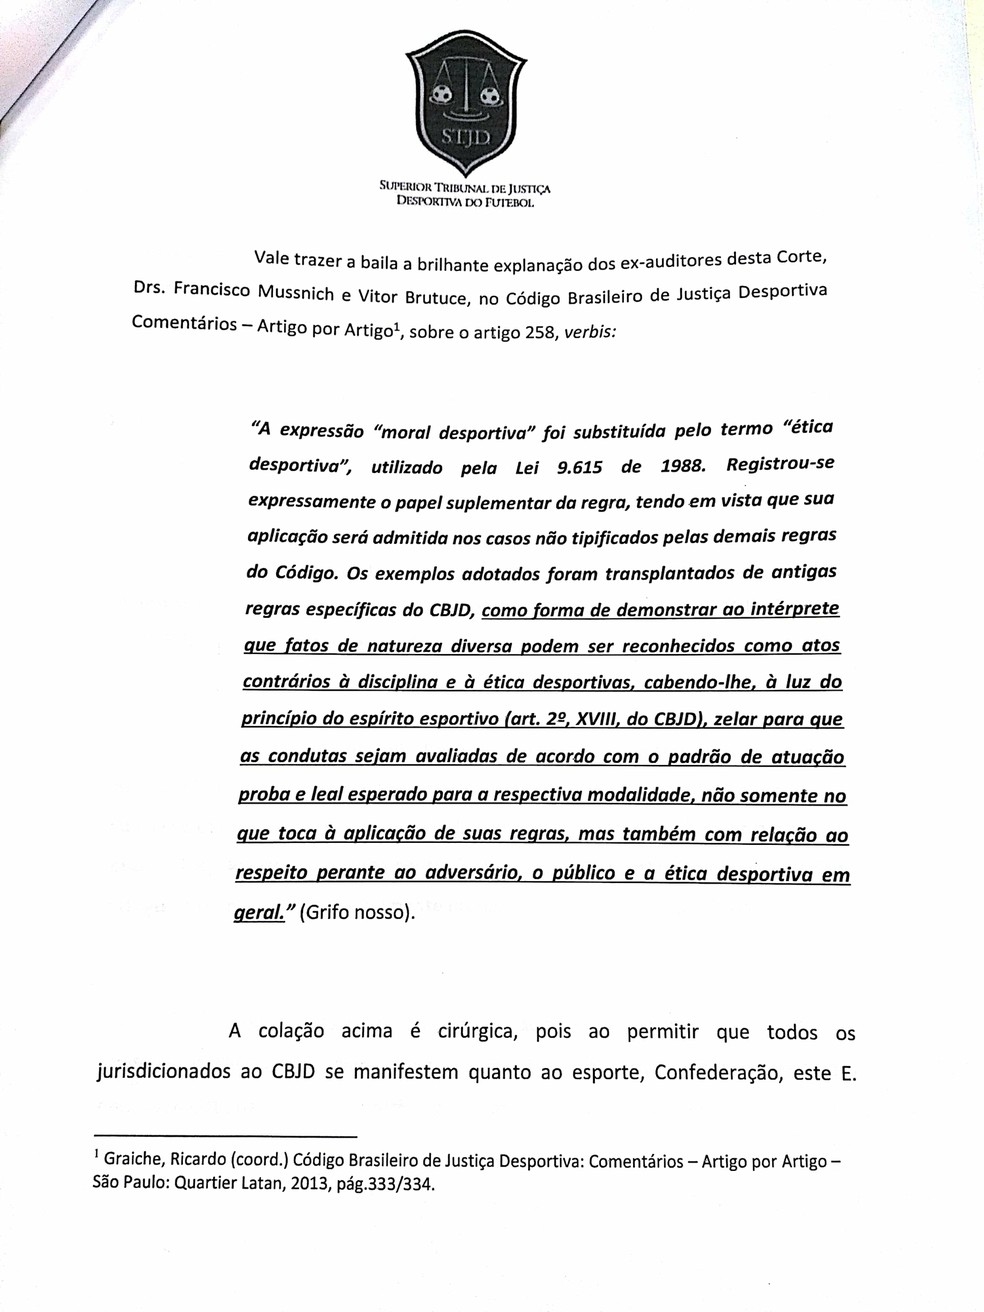 Declaração contra a CBF foi o motivo que vai levar Nosman Barreiro a julgamento no STJD (Foto: Divulgação/STJD)